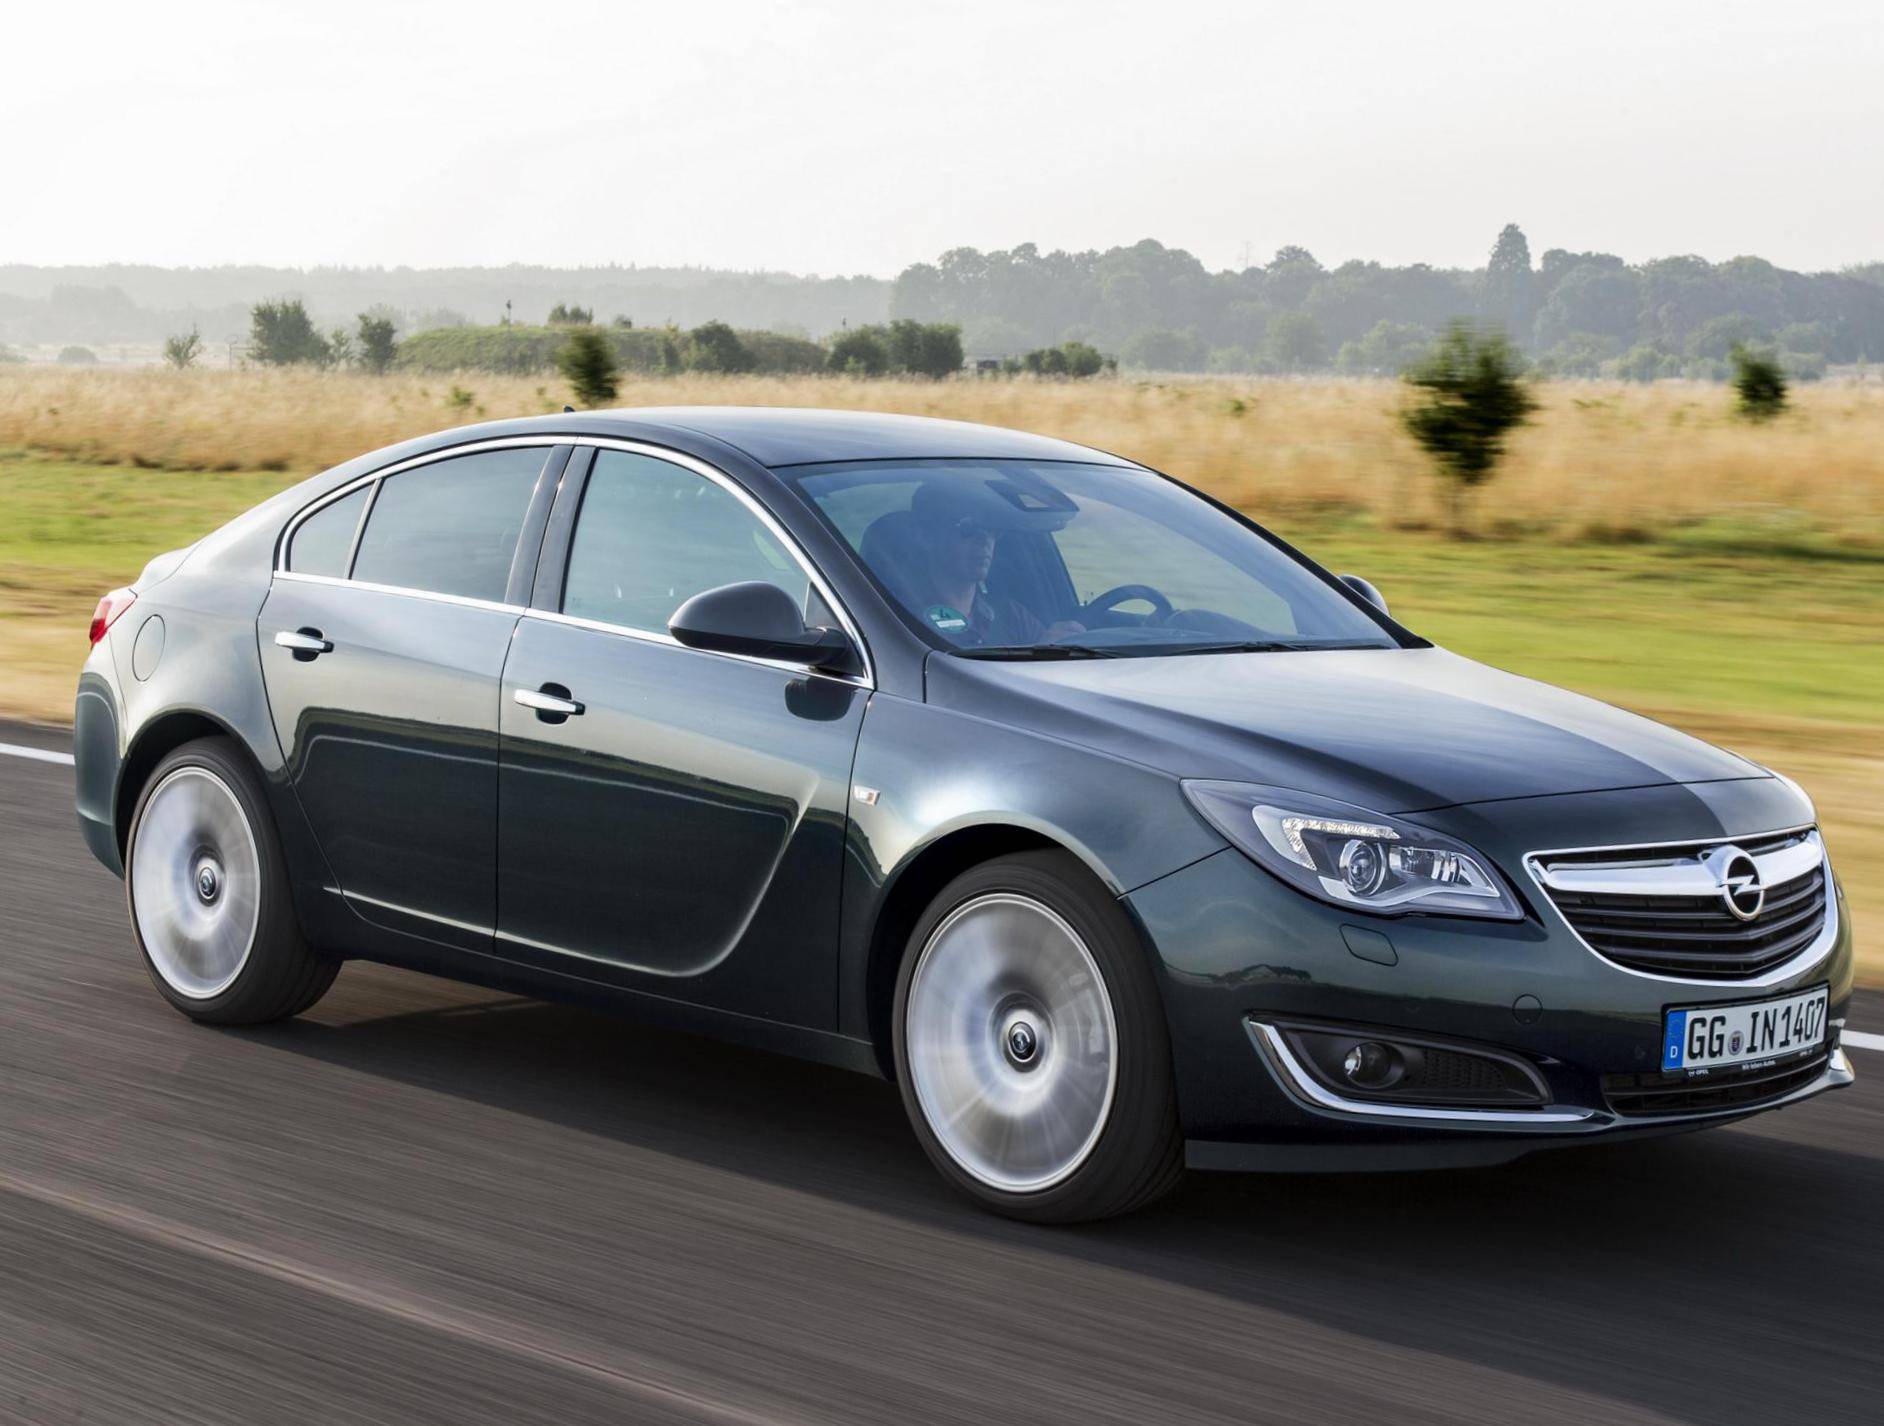 Недооцененный потомок Vectra: так ли все плохо у Opel Insignia I